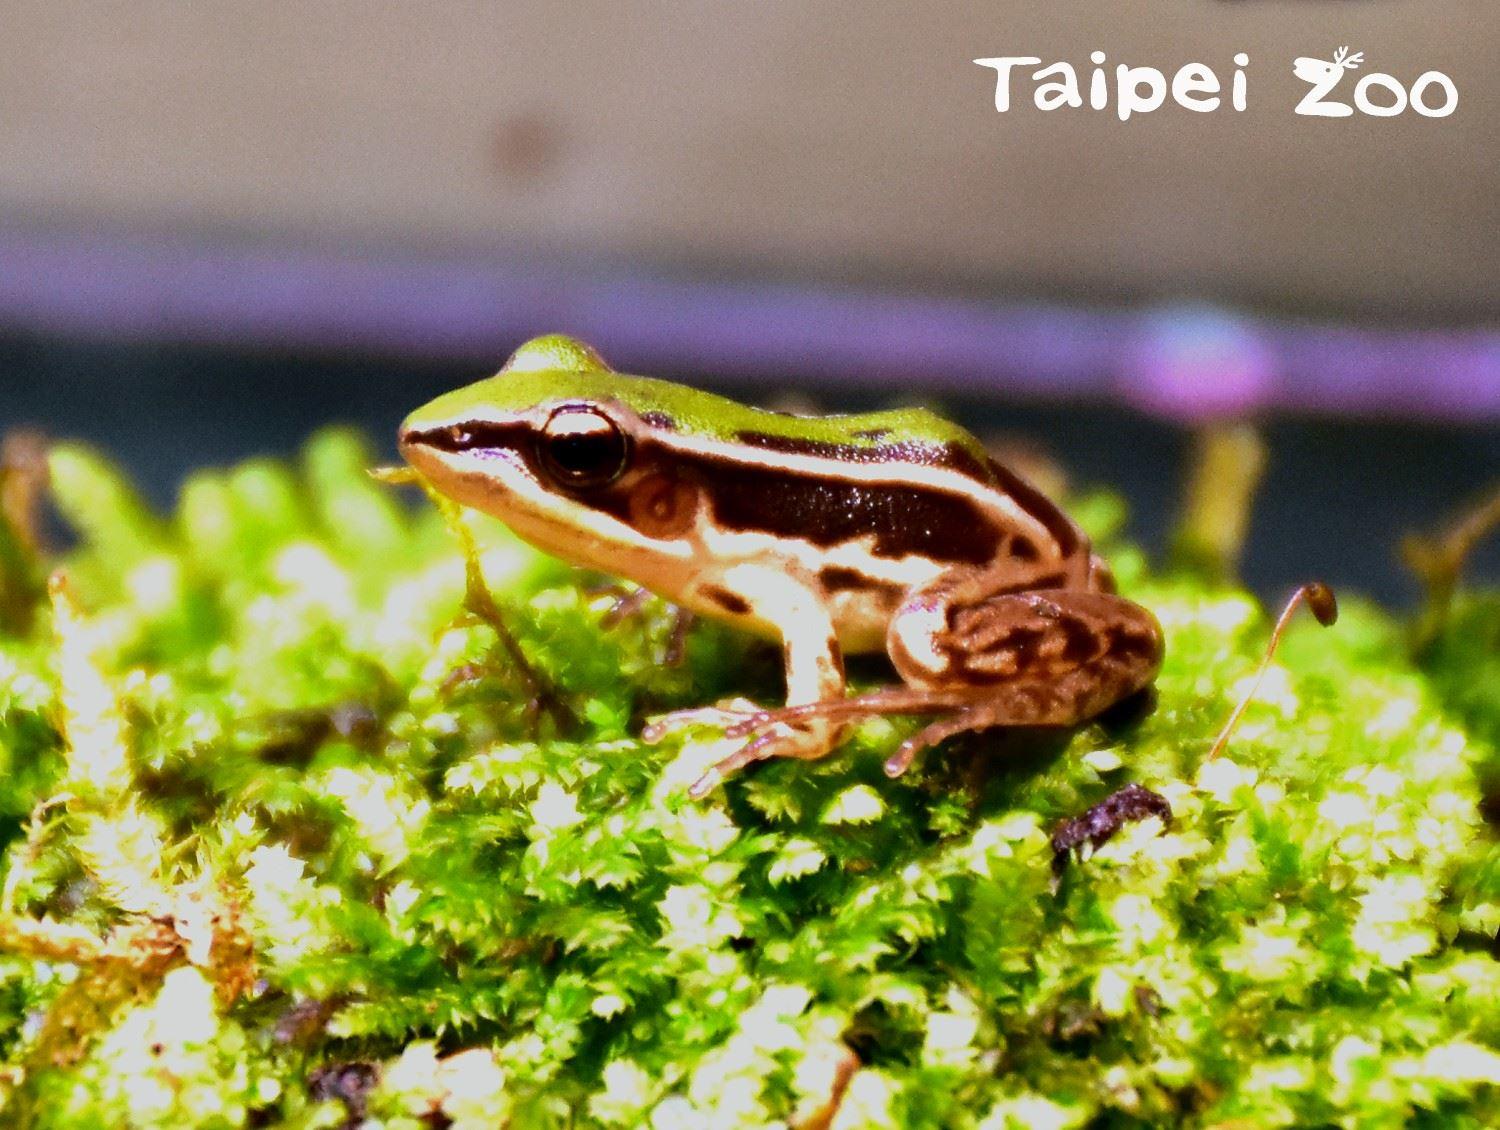 臺北赤蛙是一種個頭嬌小迷人的青蛙